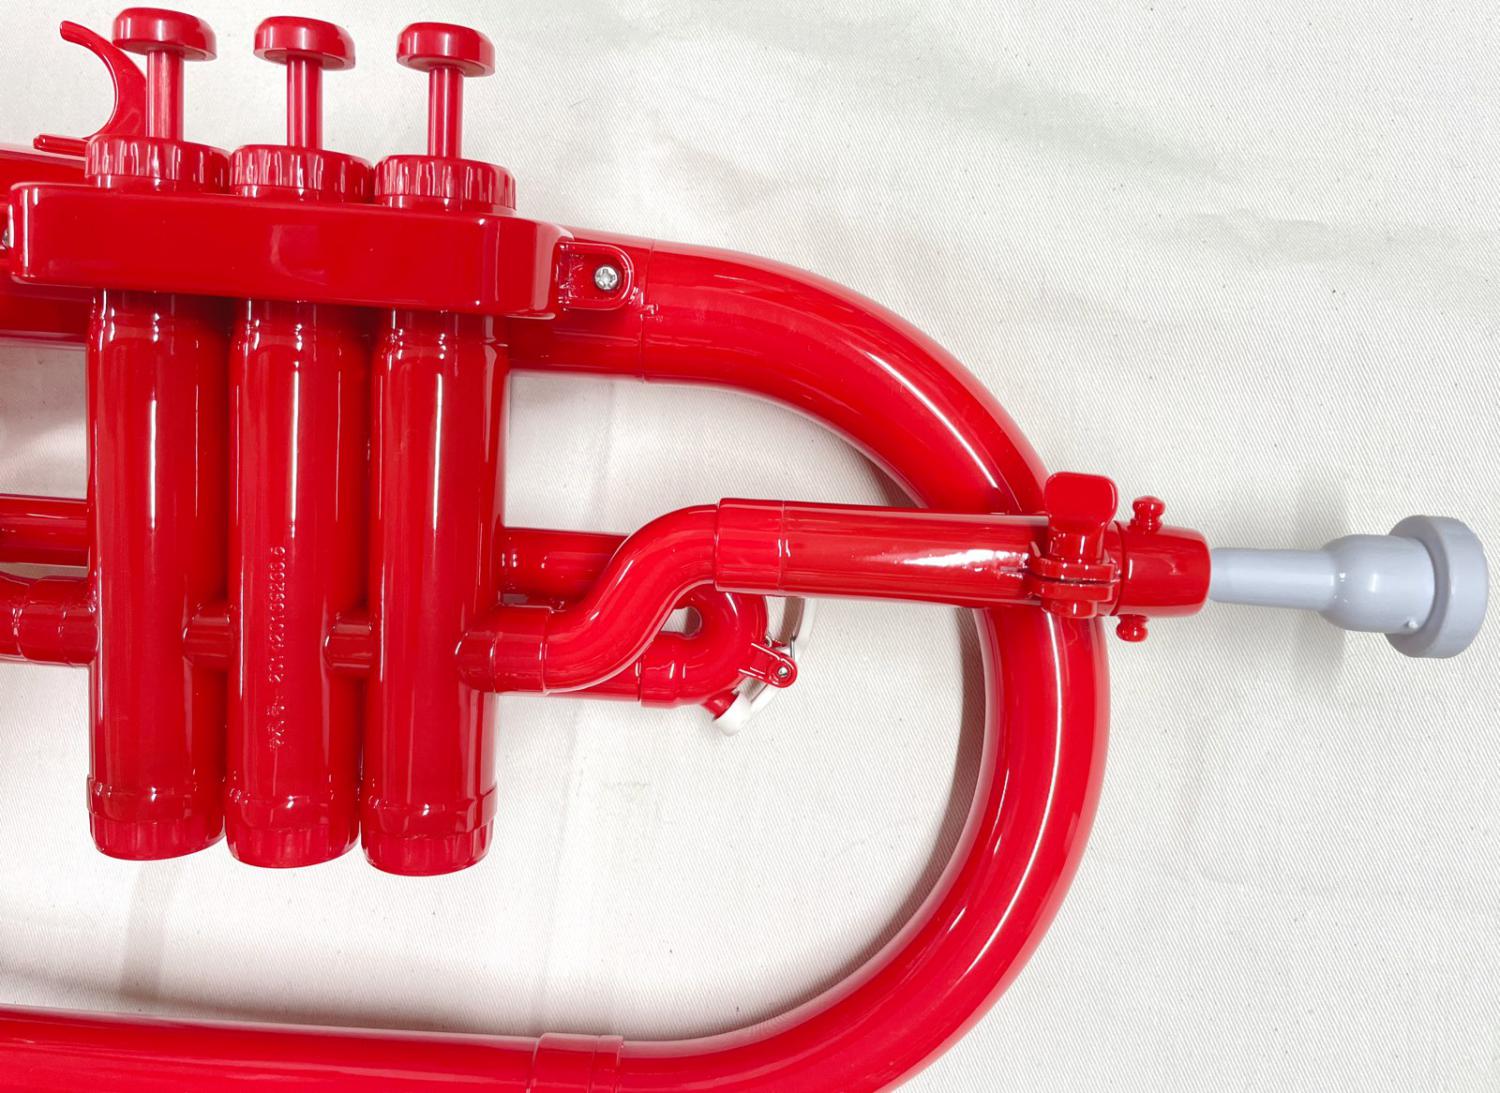 ZO ( ゼットオー ) FL-01 フリューゲルホルン レッド 新品 アウトレット プラスチック 管楽器 Flugel horn red 楽器  ミュート セット A 北海道 沖縄 離島不可 送料無料! | ワタナベ楽器店 ONLINE SHOP